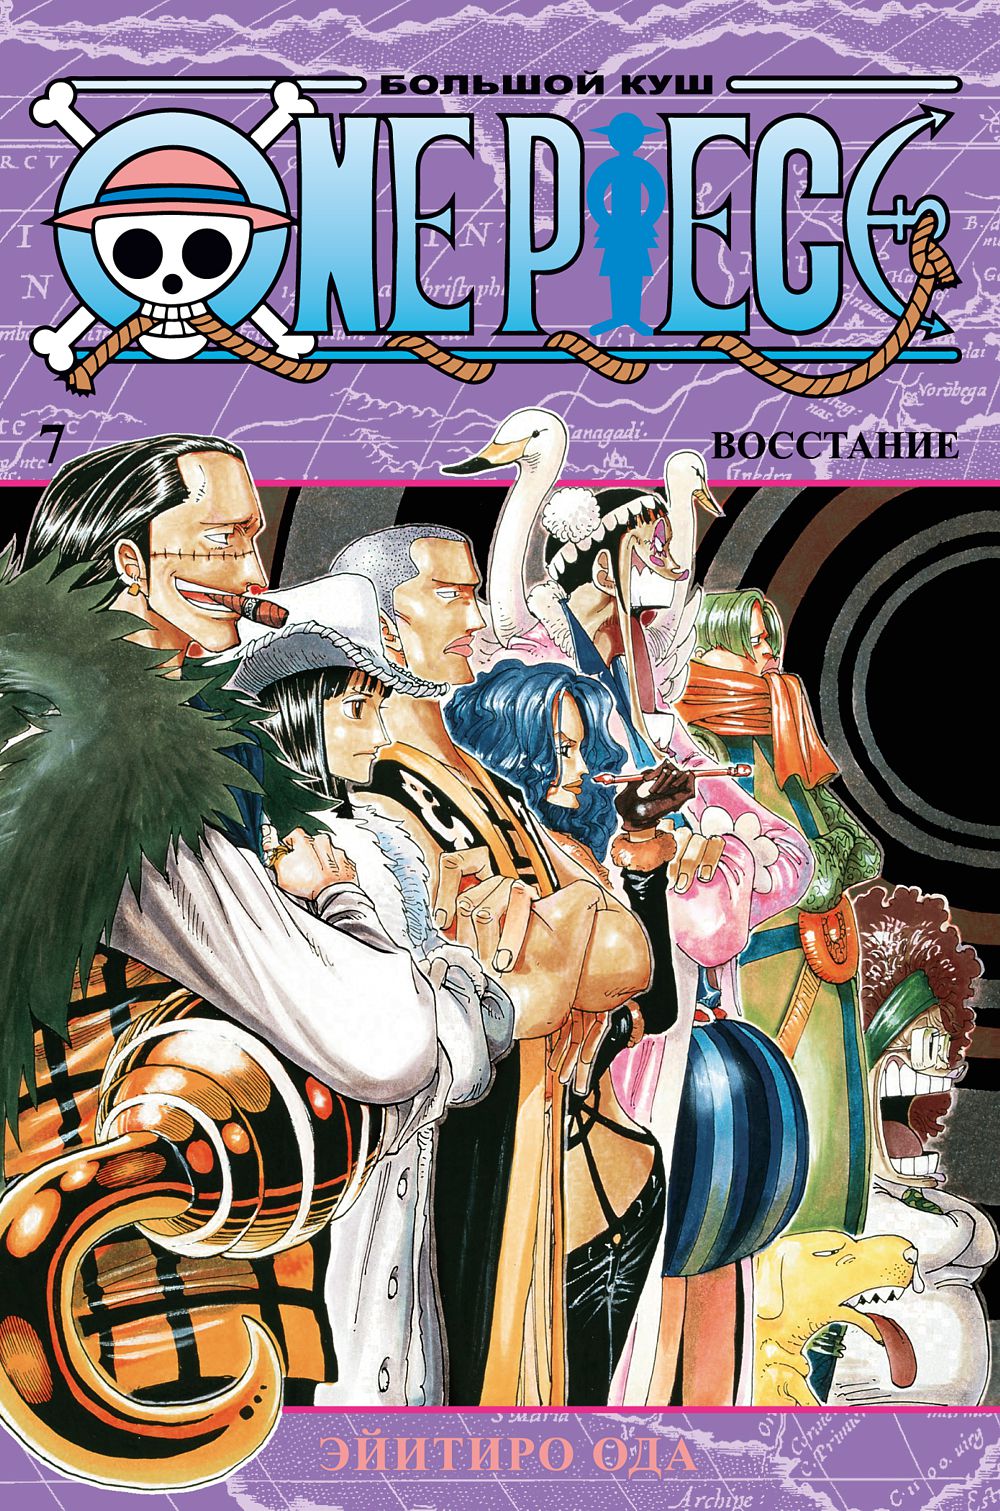 Манга One Piece: Большой куш – Восстание. Книга 7 цена и фото